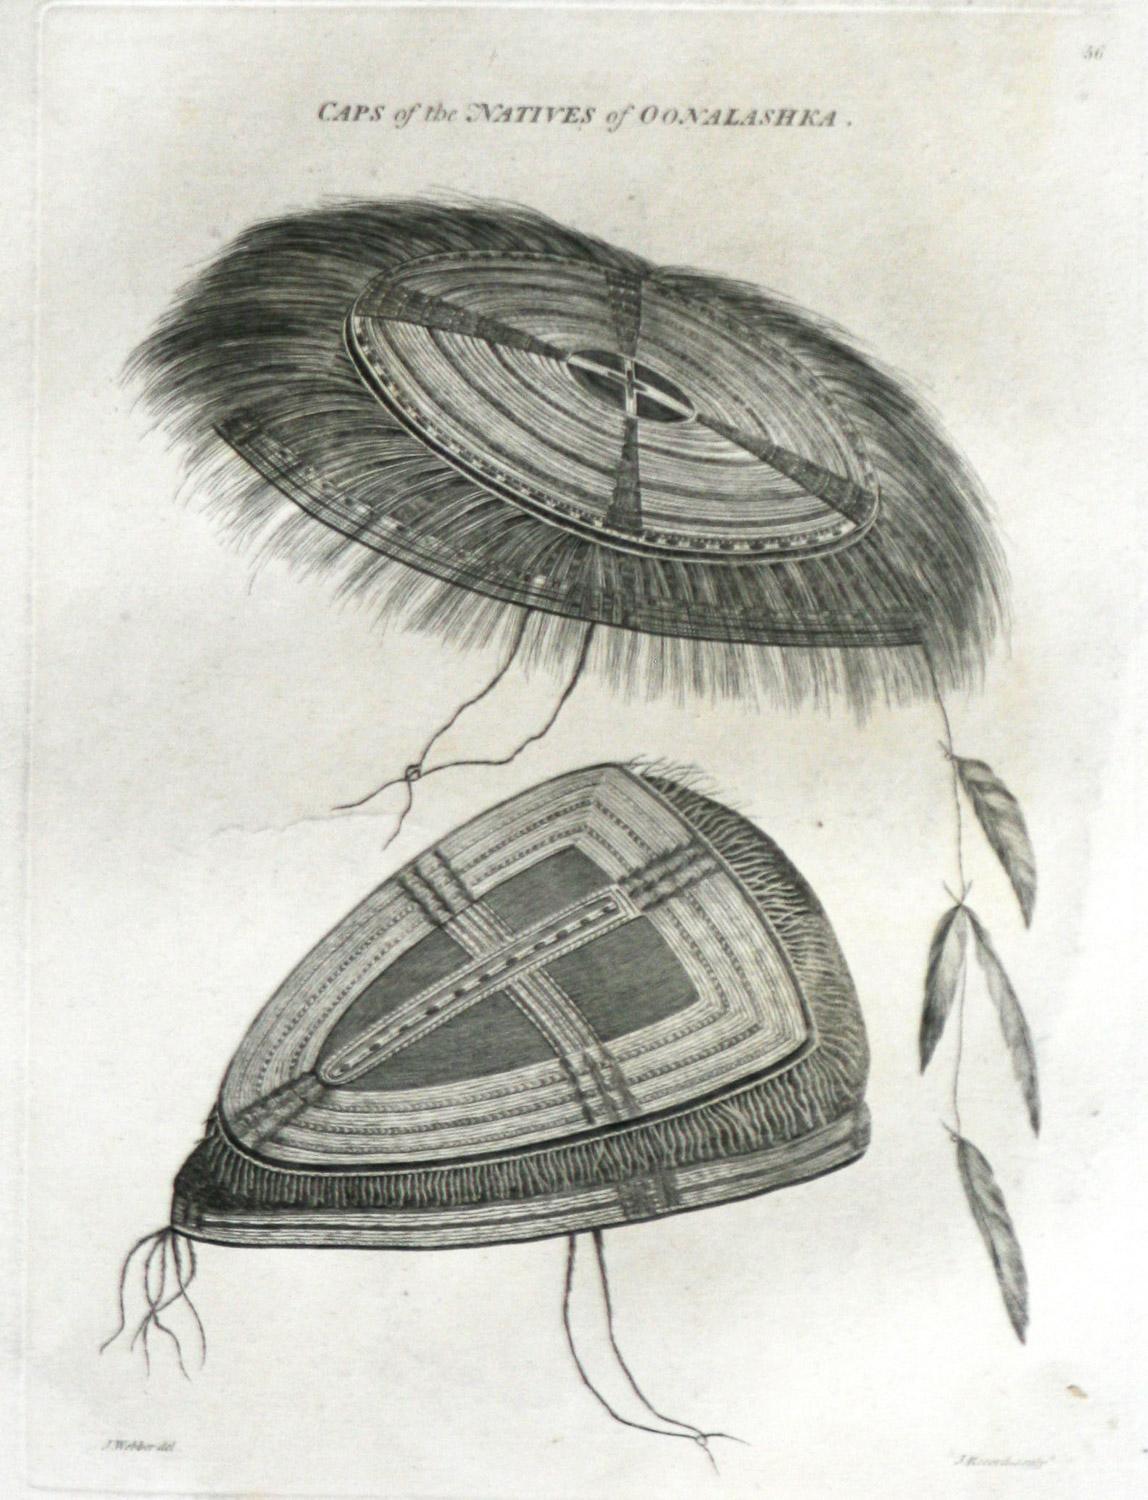 CAP des indigènes d'Oonalashka (Alaska) est tiré de la première édition de l'Atlas de 1784 accompagnant le Capt. James Cook and King ; troisième et dernier voyage du capitaine James Cook. John Webber (1752-1793) était l'artiste officiel du troisième